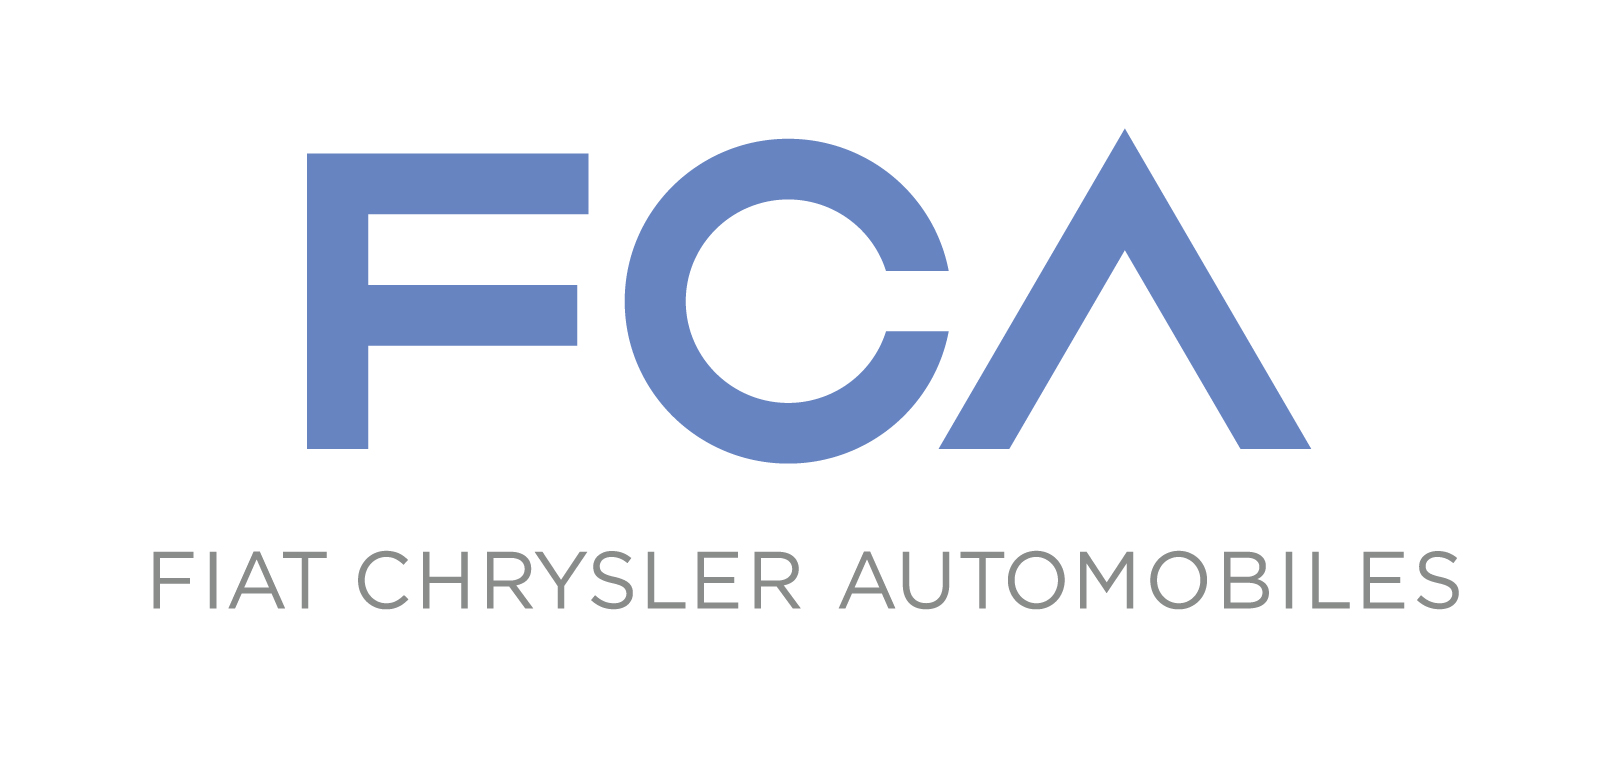 FCA Emissions, Daimler Diesels, & EV Driving